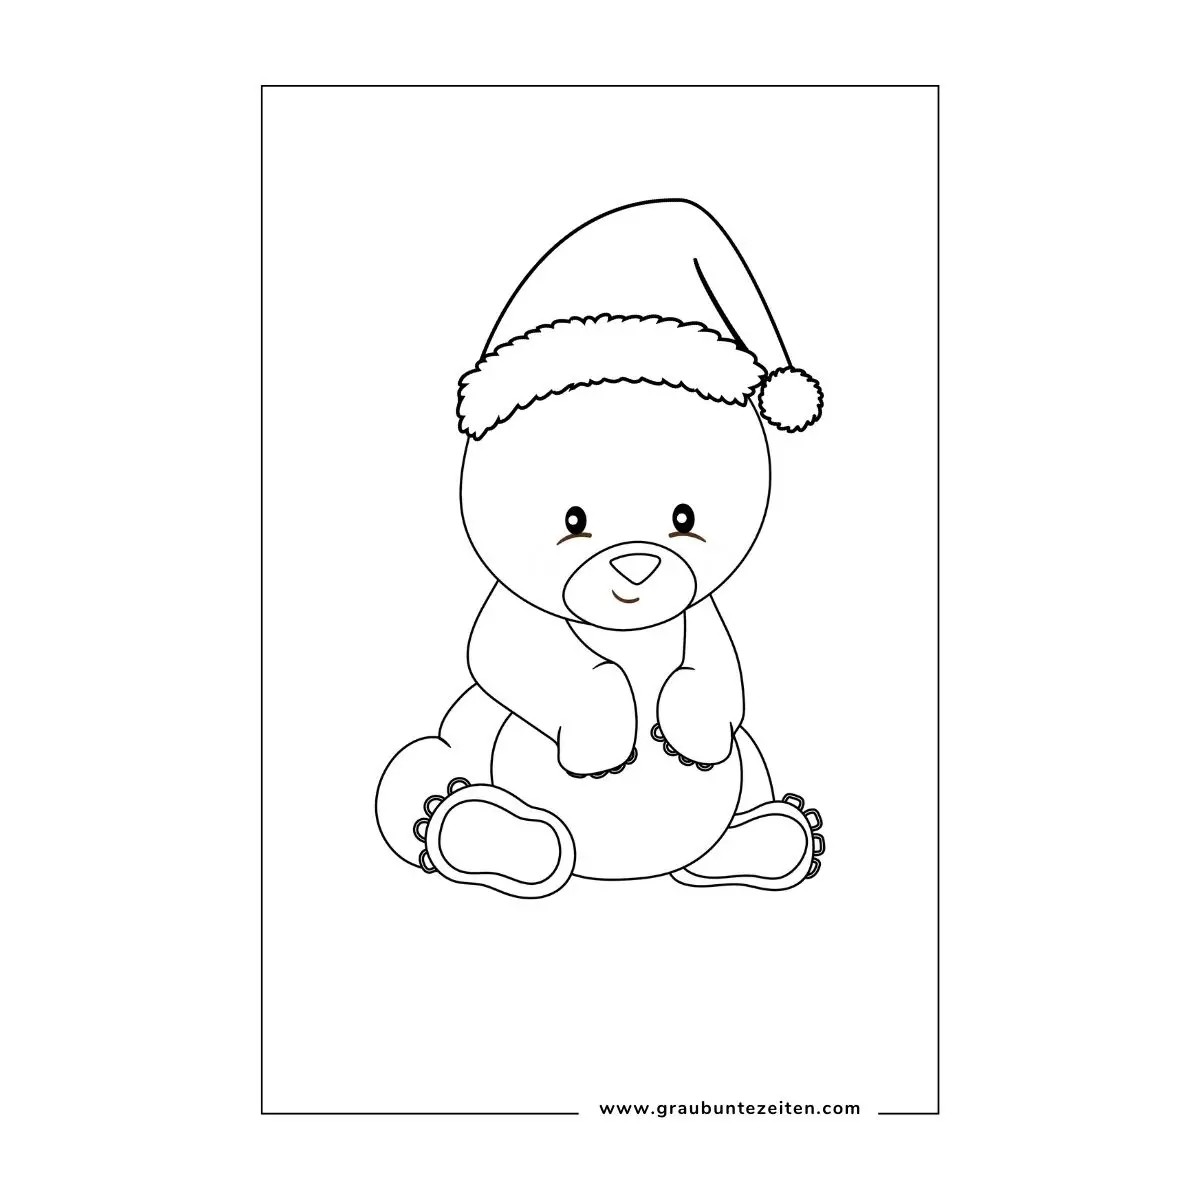 Ausmalbilder Weihnachten Erwachsene. Kleiner Bär mit Weihnachtsmütze.